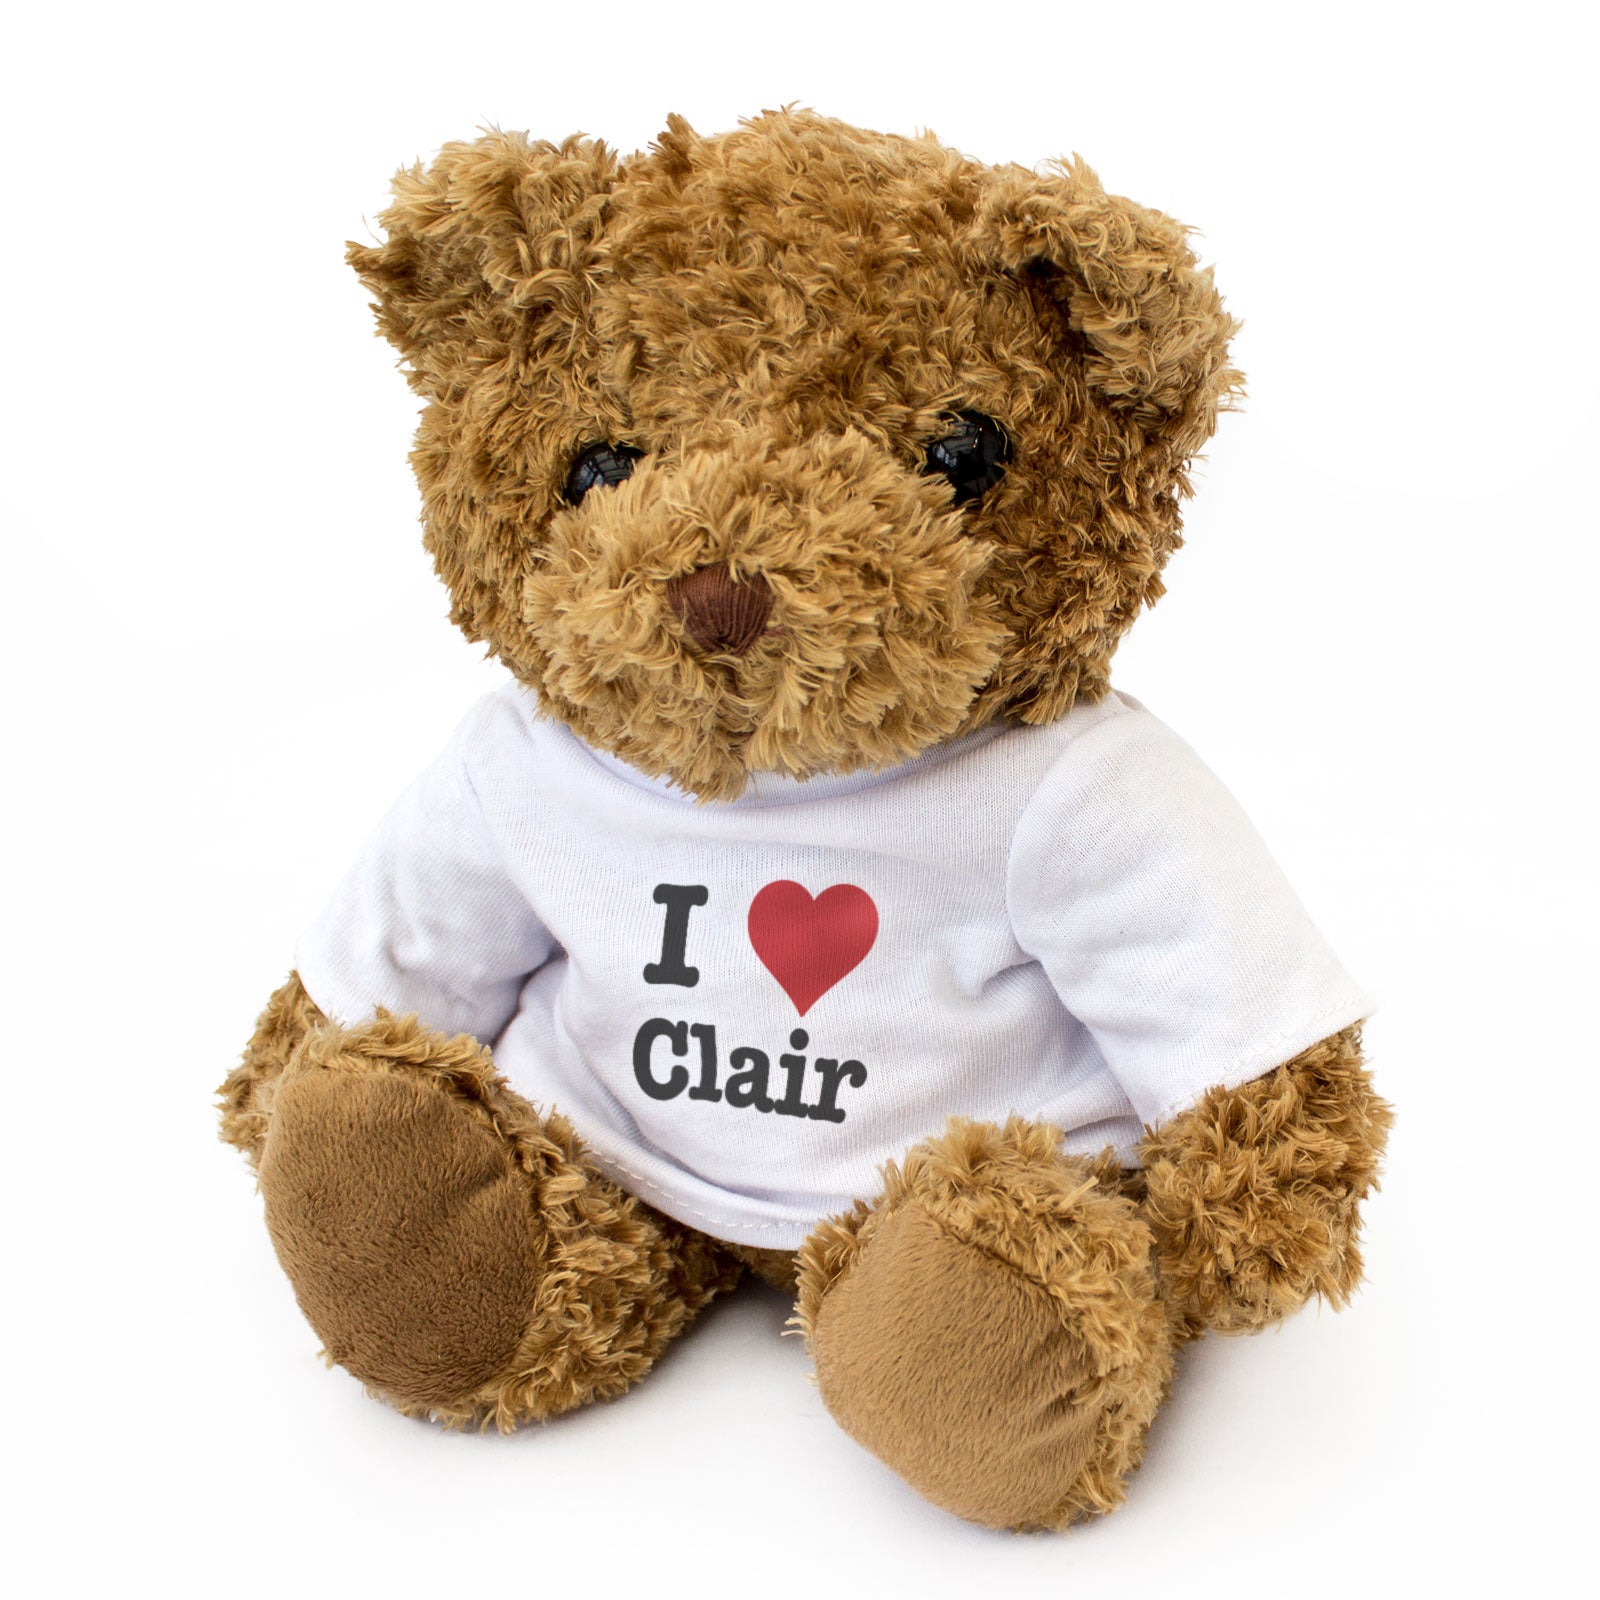 I Love Clair - Teddy Bear